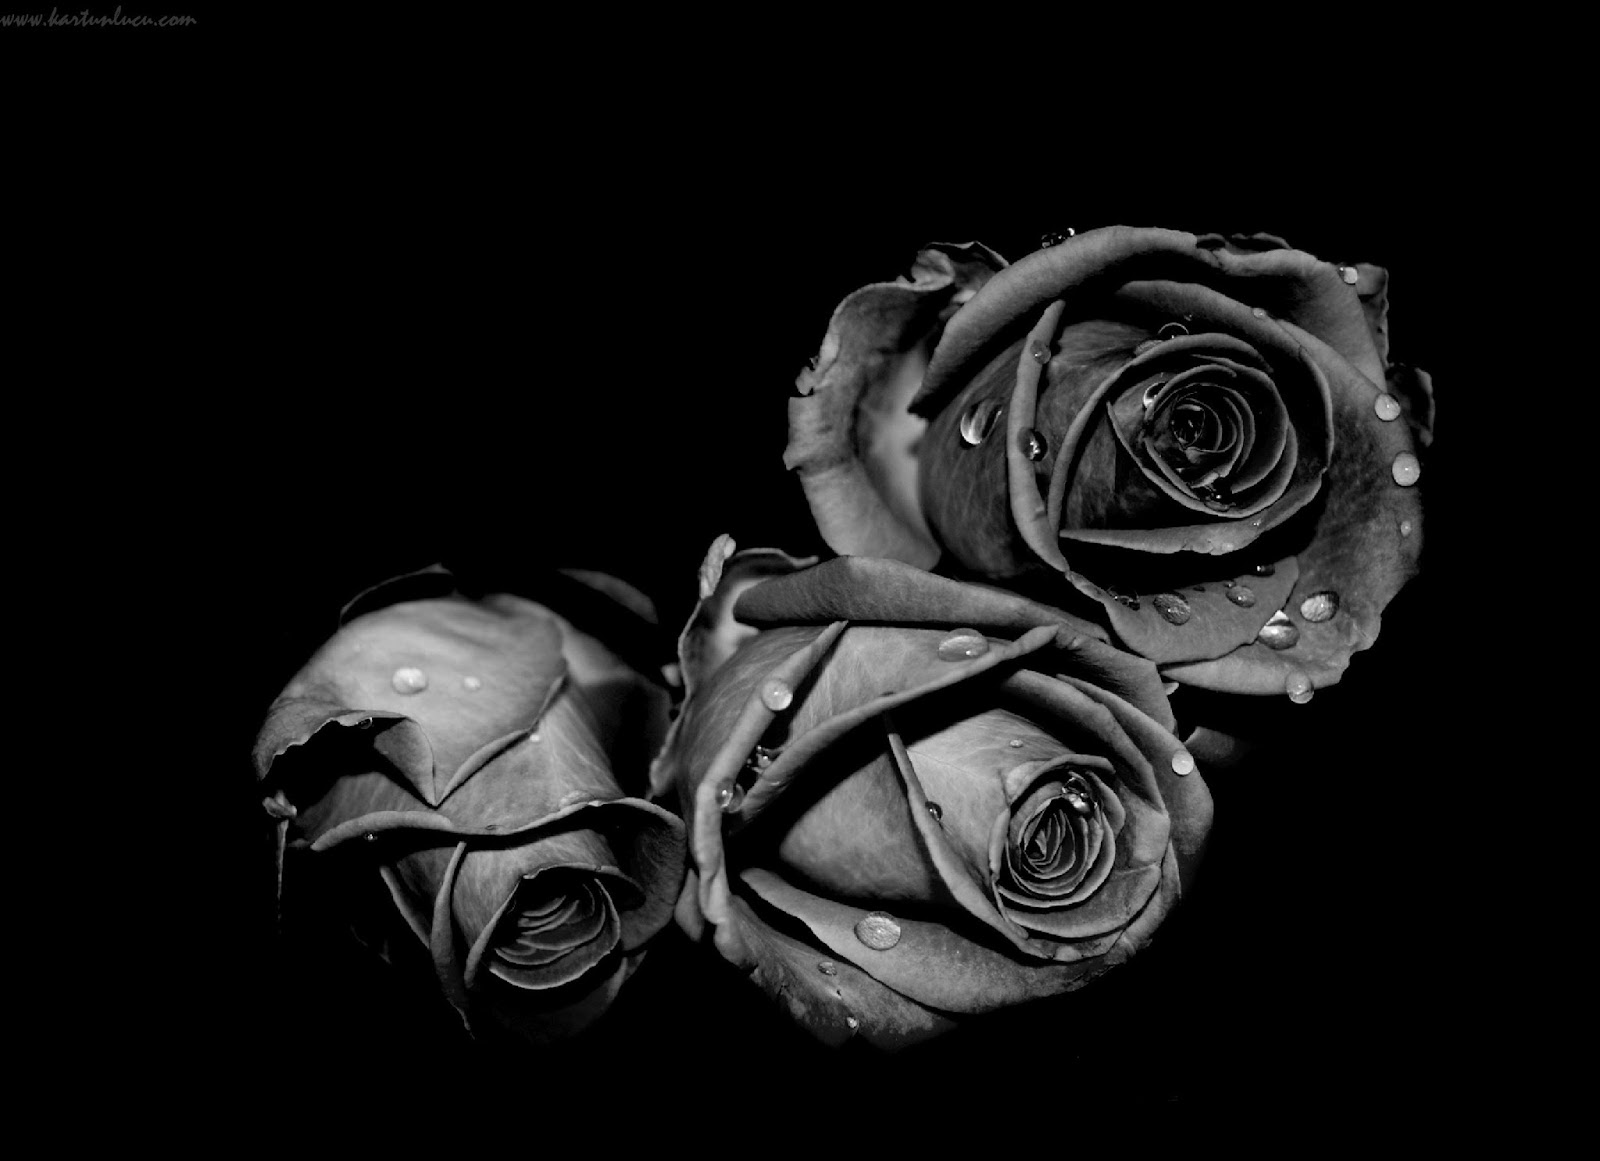 배경 hitam putih,검정,흑백 사진,정물 사진,하얀,검정색과 흰색